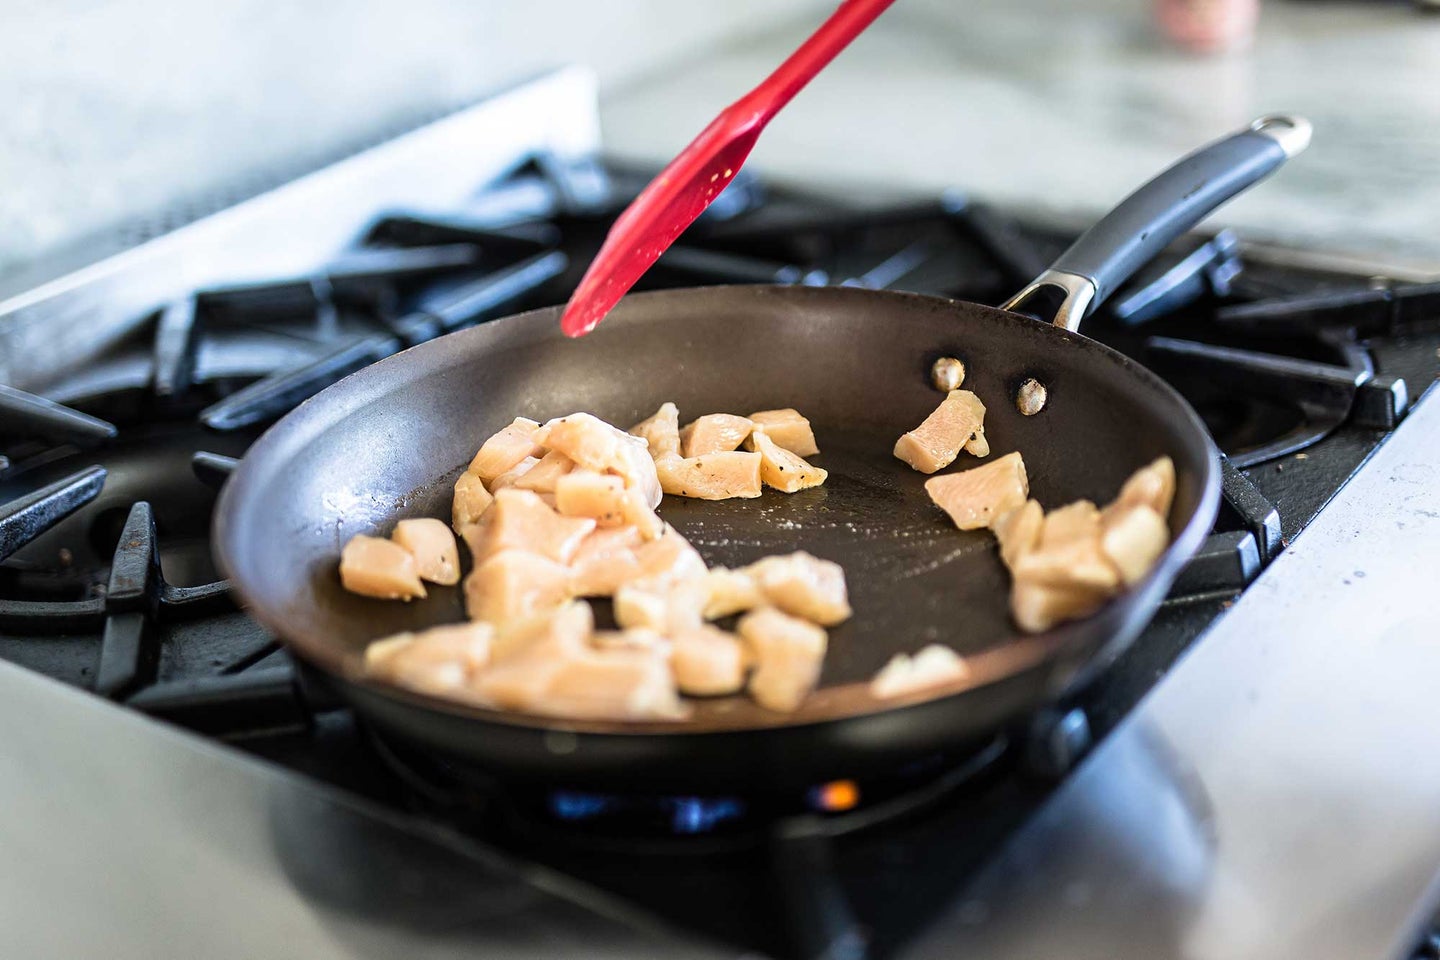 Stir fried chicken in a pan